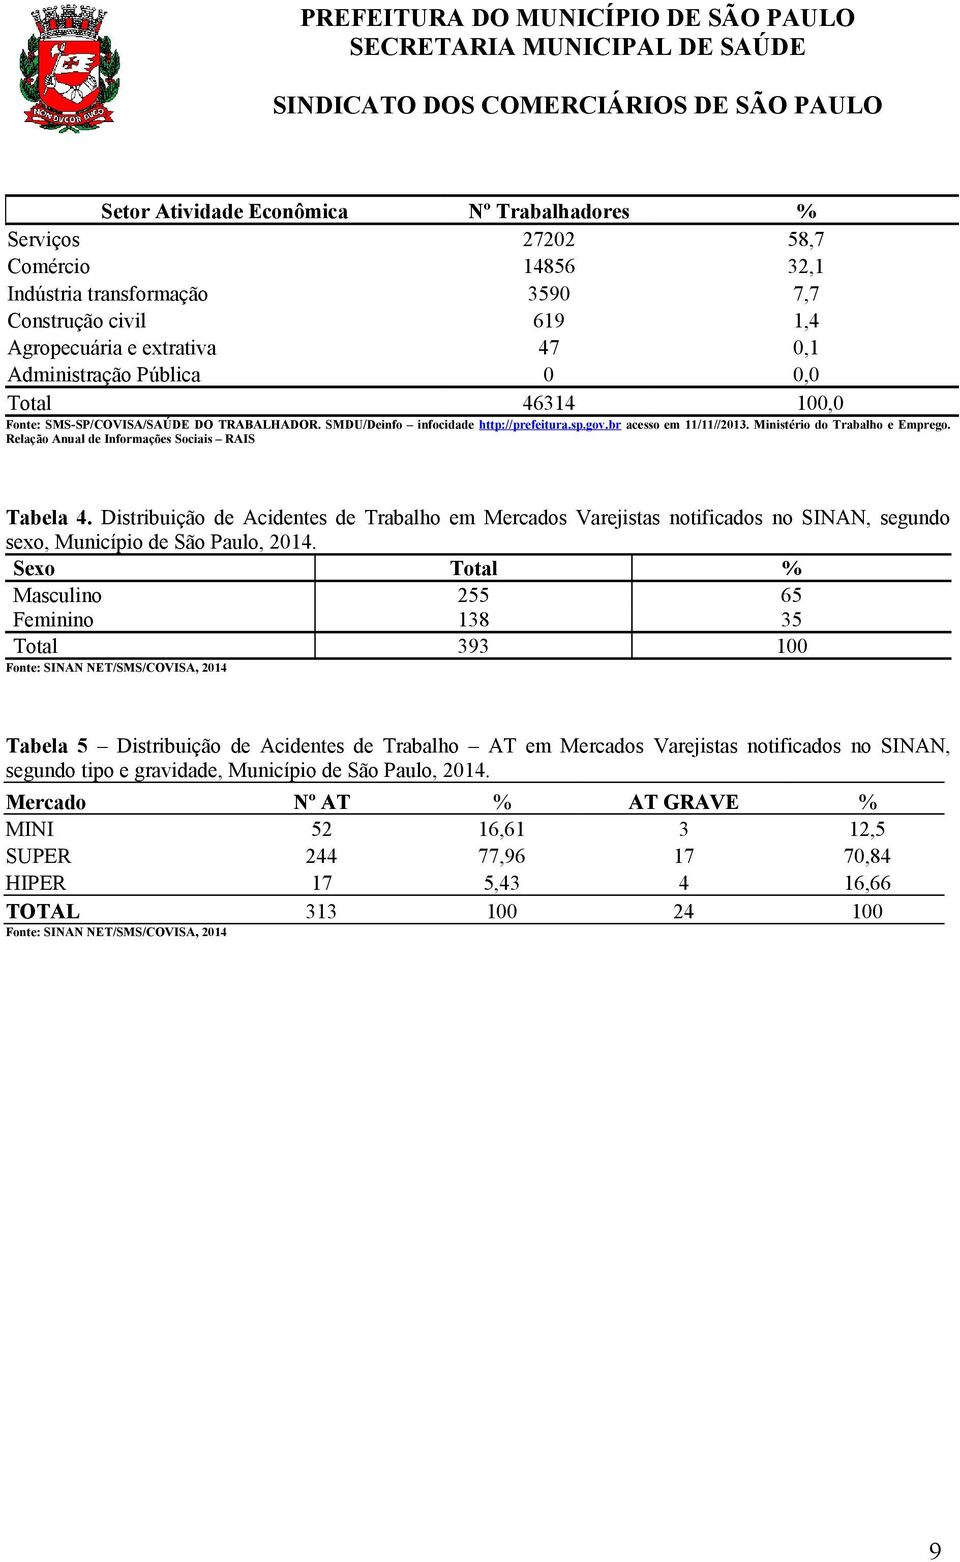 Relação Anual de Informações Sociais RAIS Tabela 4. Distribuição de Acidentes de Trabalho em Mercados Varejistas notificados no SINAN, segundo sexo, Município de São Paulo, 2014.